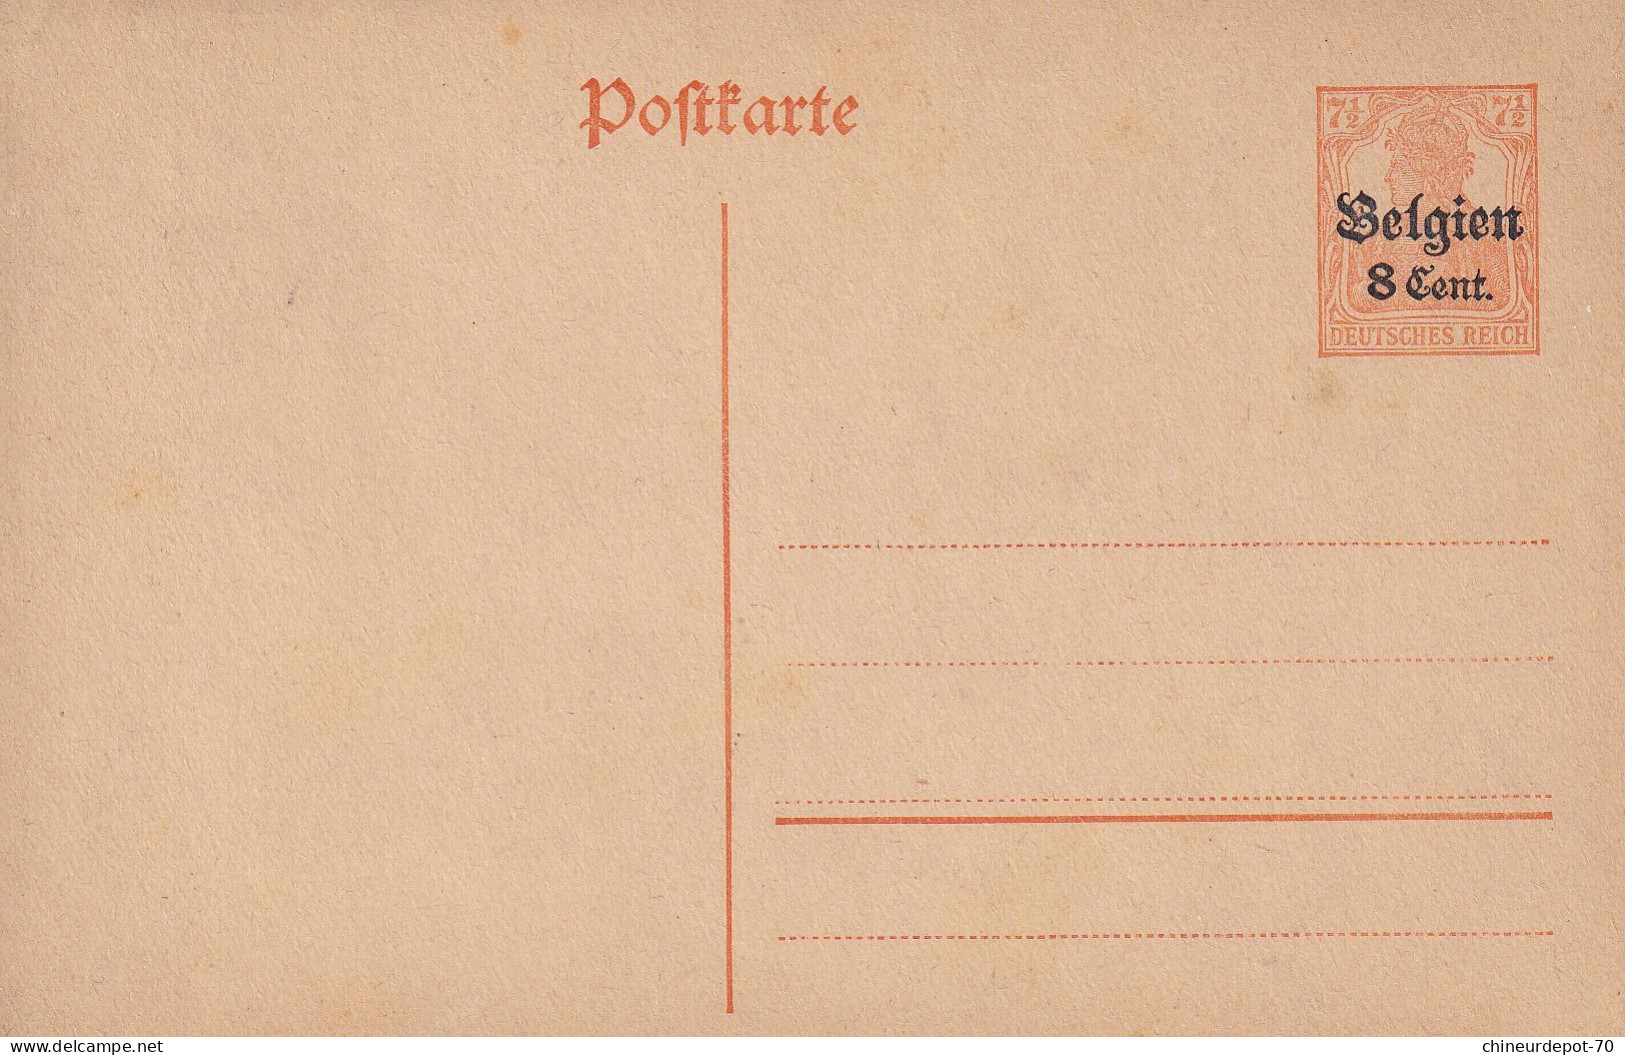 Pofttarte Occupation Deutches Reich Surcharge Belgien 8 Cent - Briefe U. Dokumente